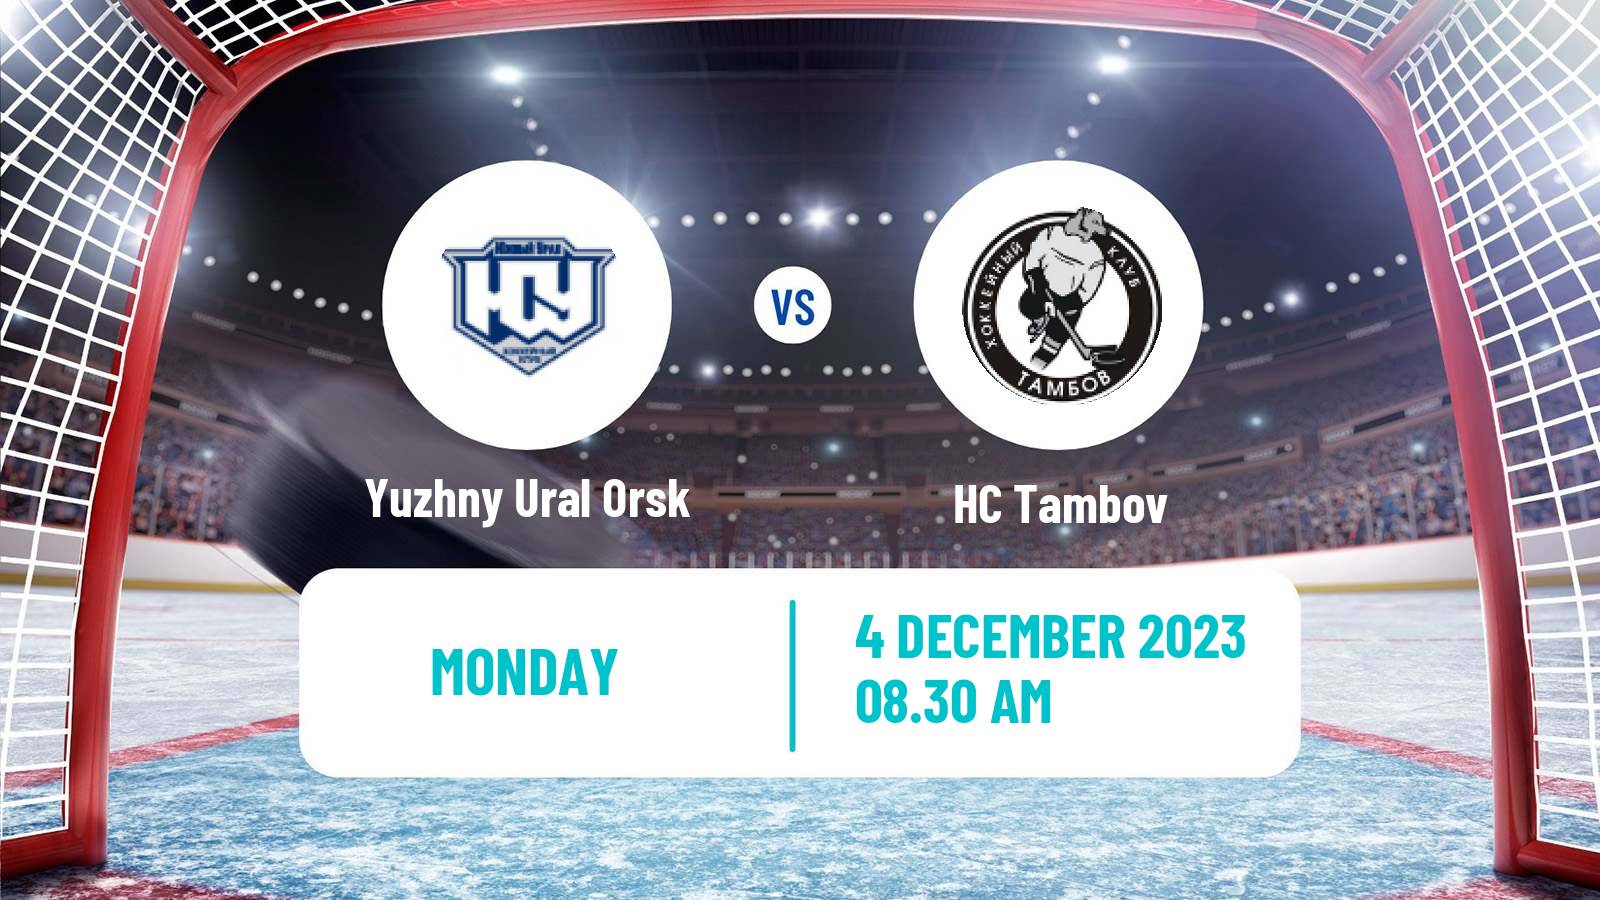 Hockey VHL Yuzhny Ural Orsk - Tambov